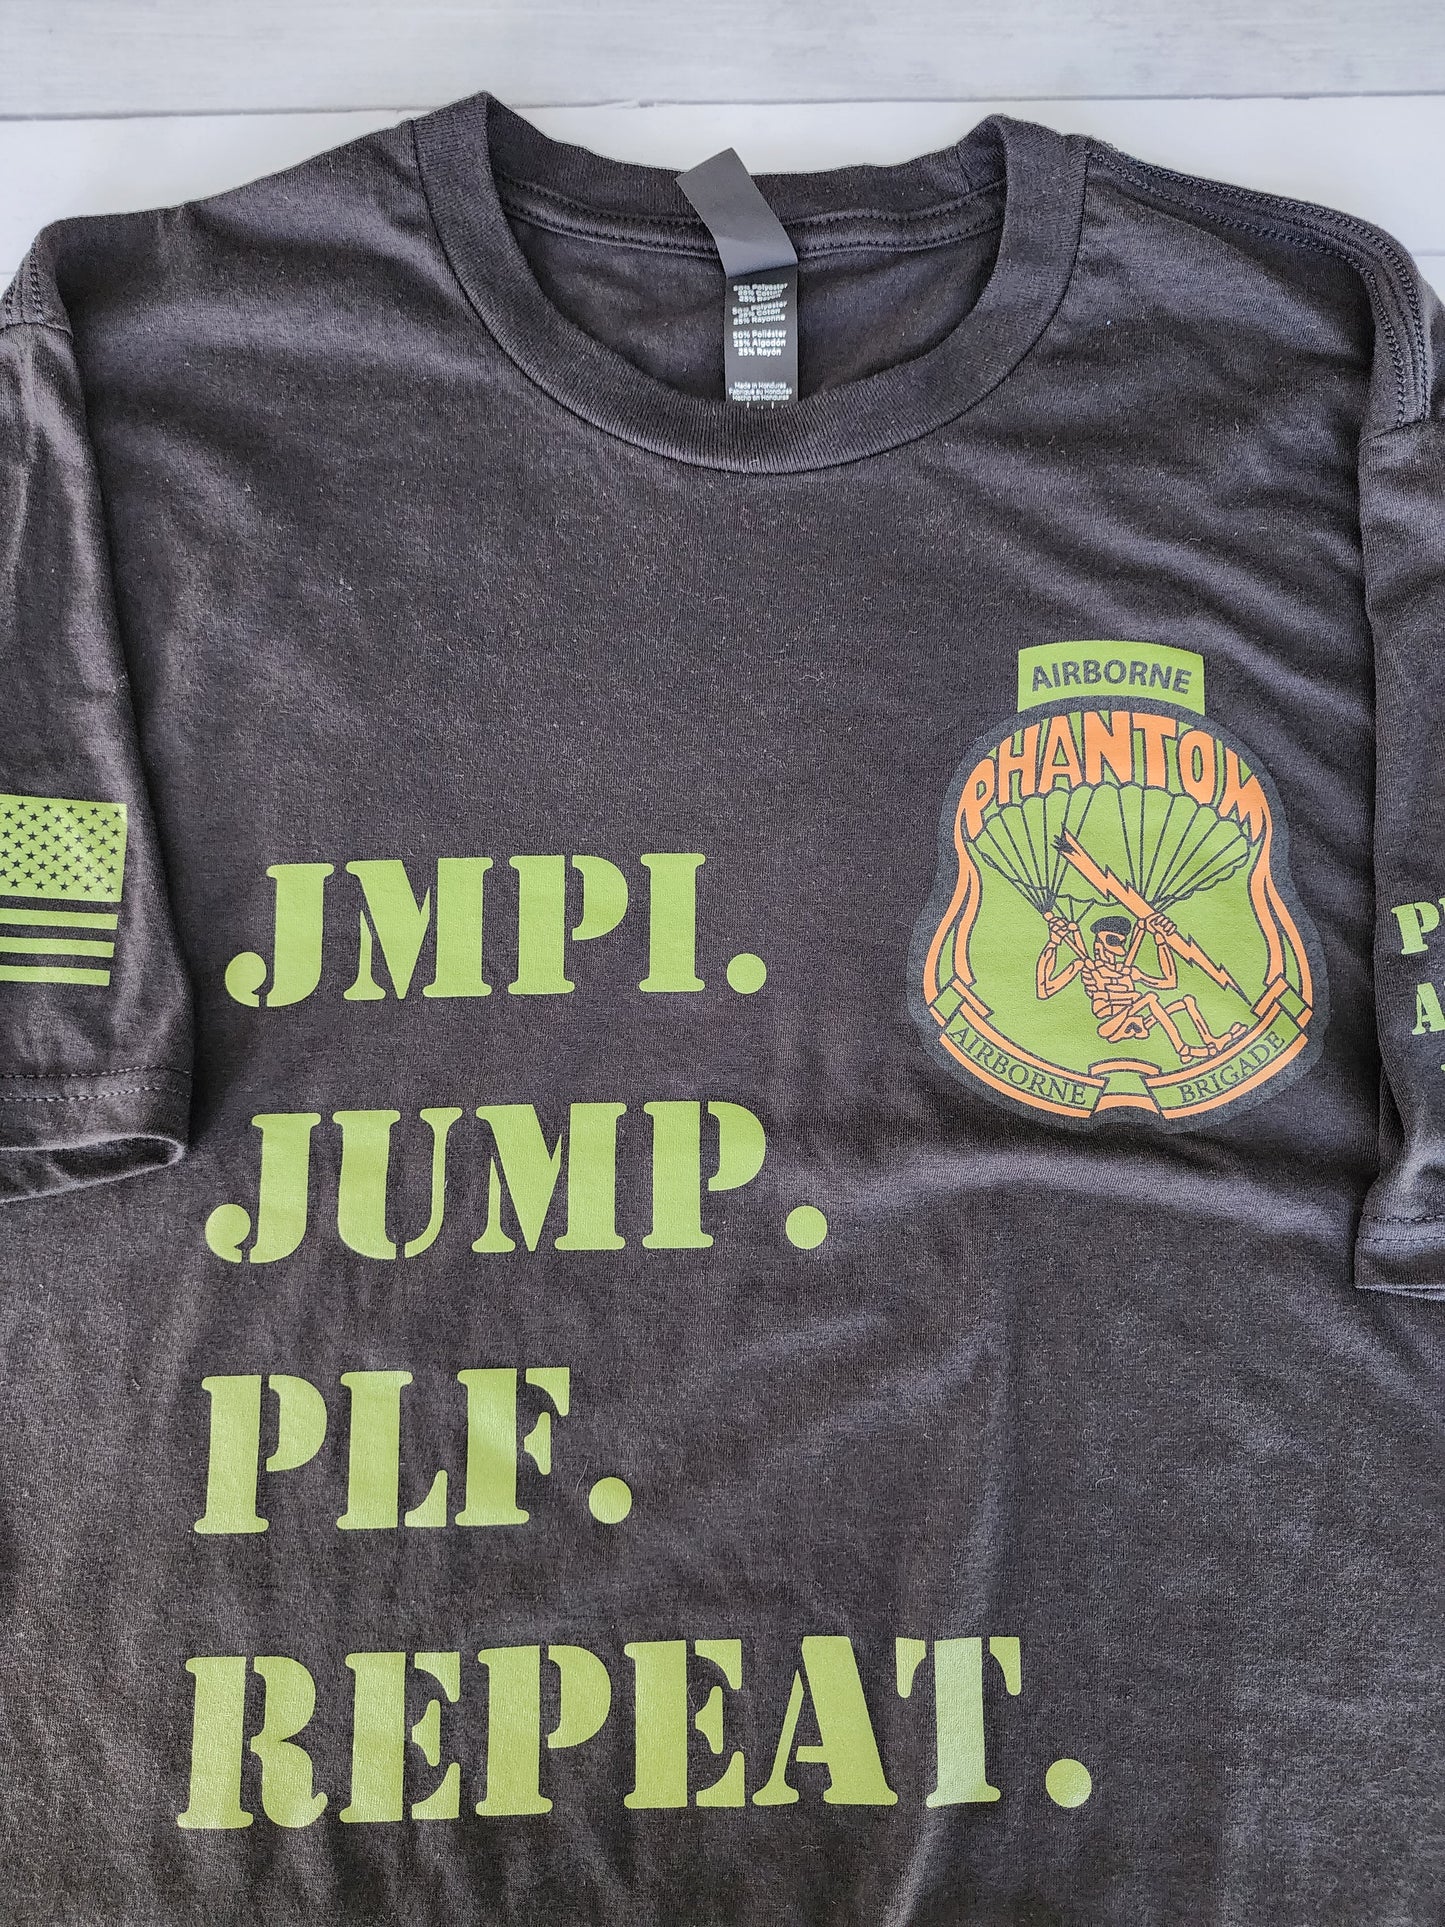 JMPI T-Shirt